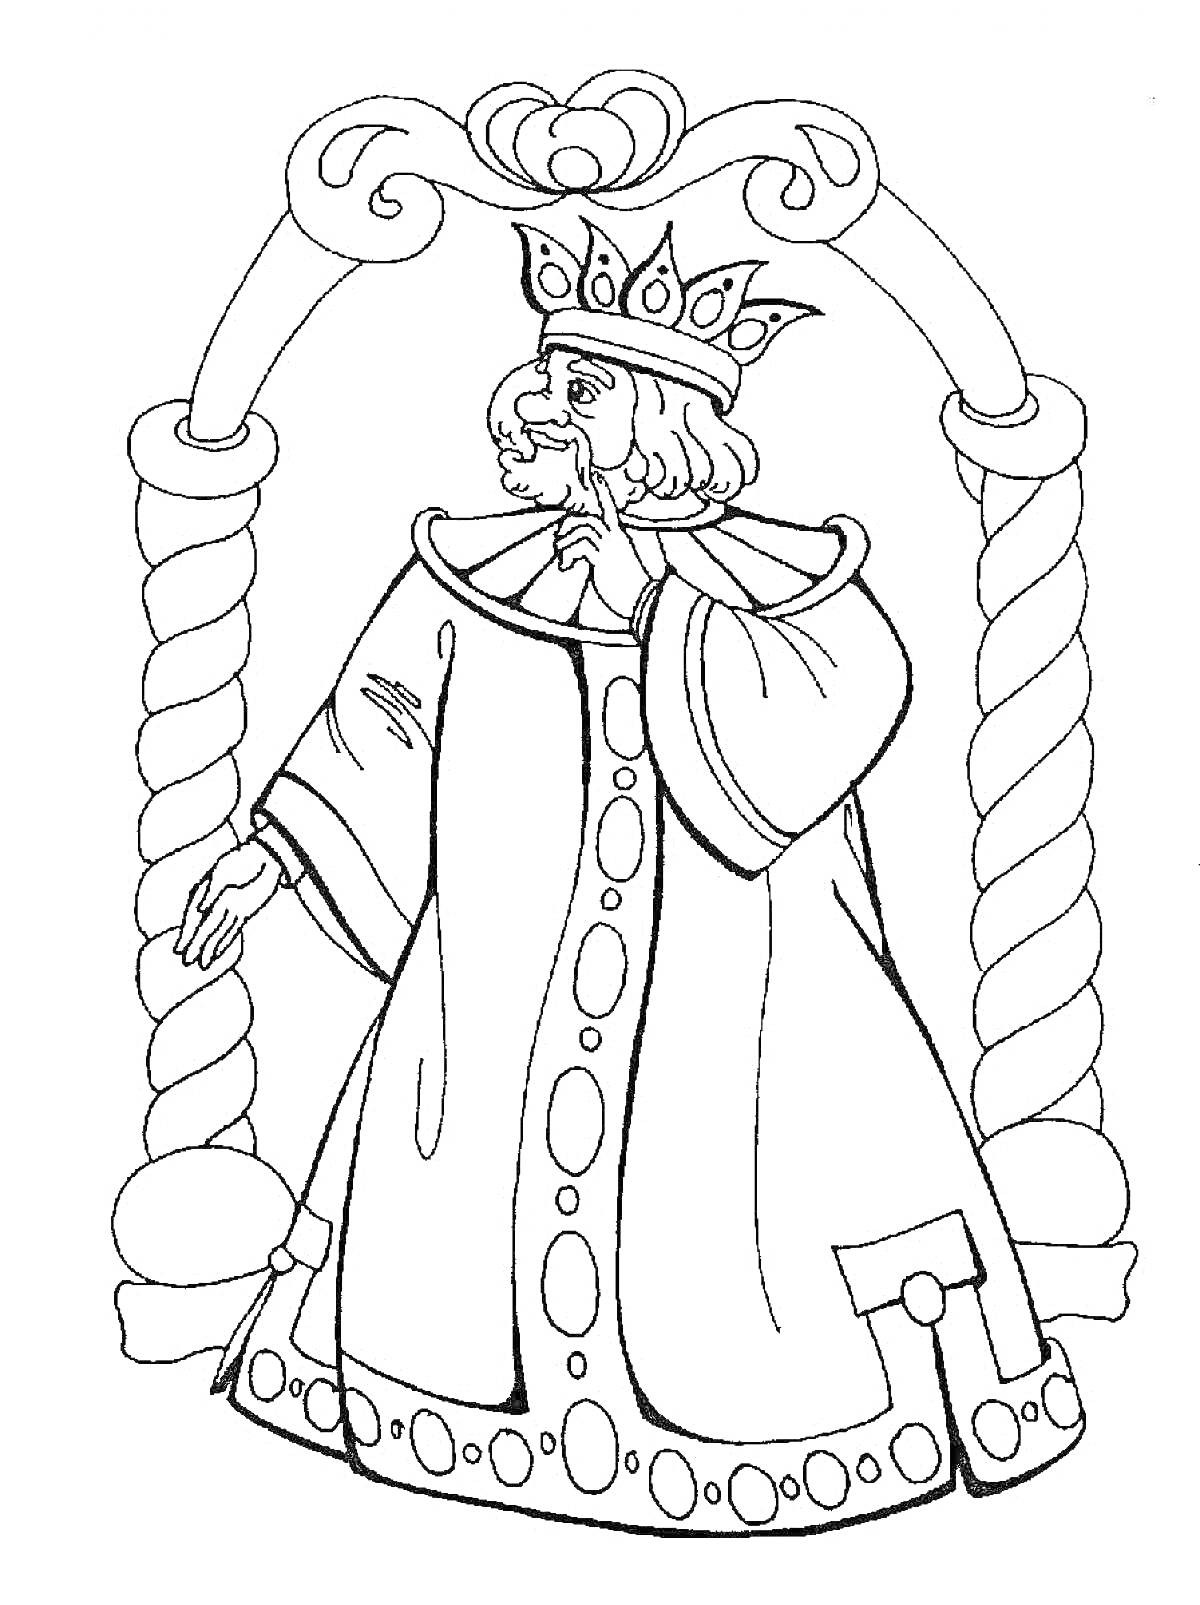 Царь с короной под аркой с завитками и столбами